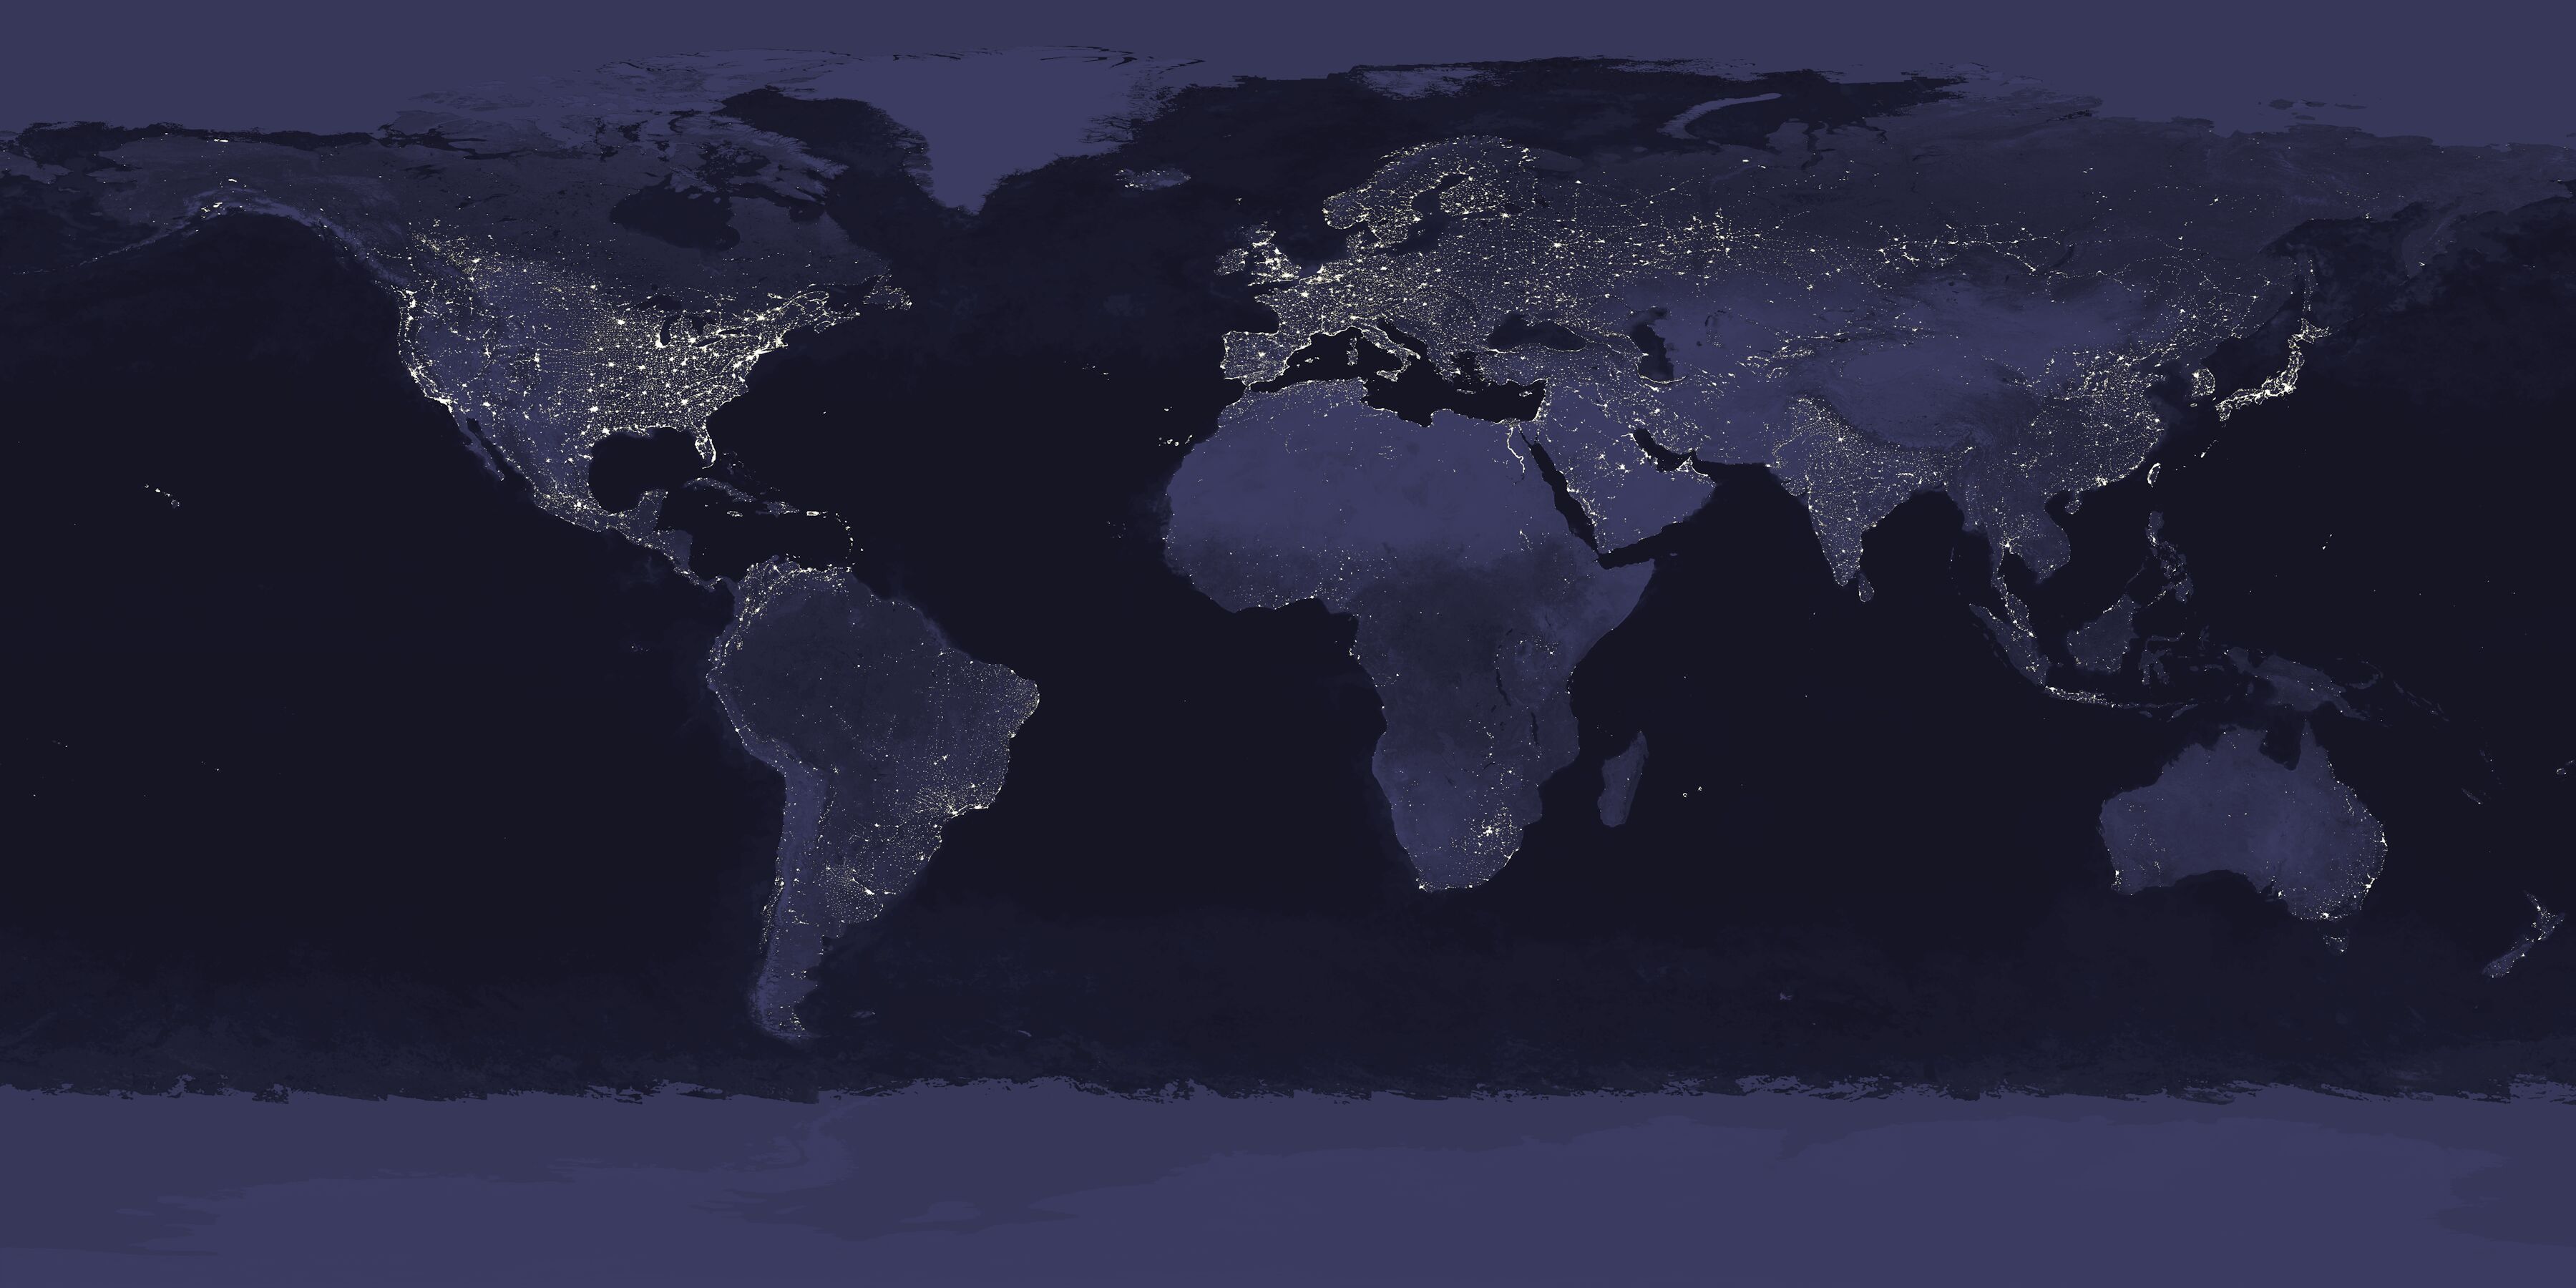 night, Earth, maps - desktop wallpaper